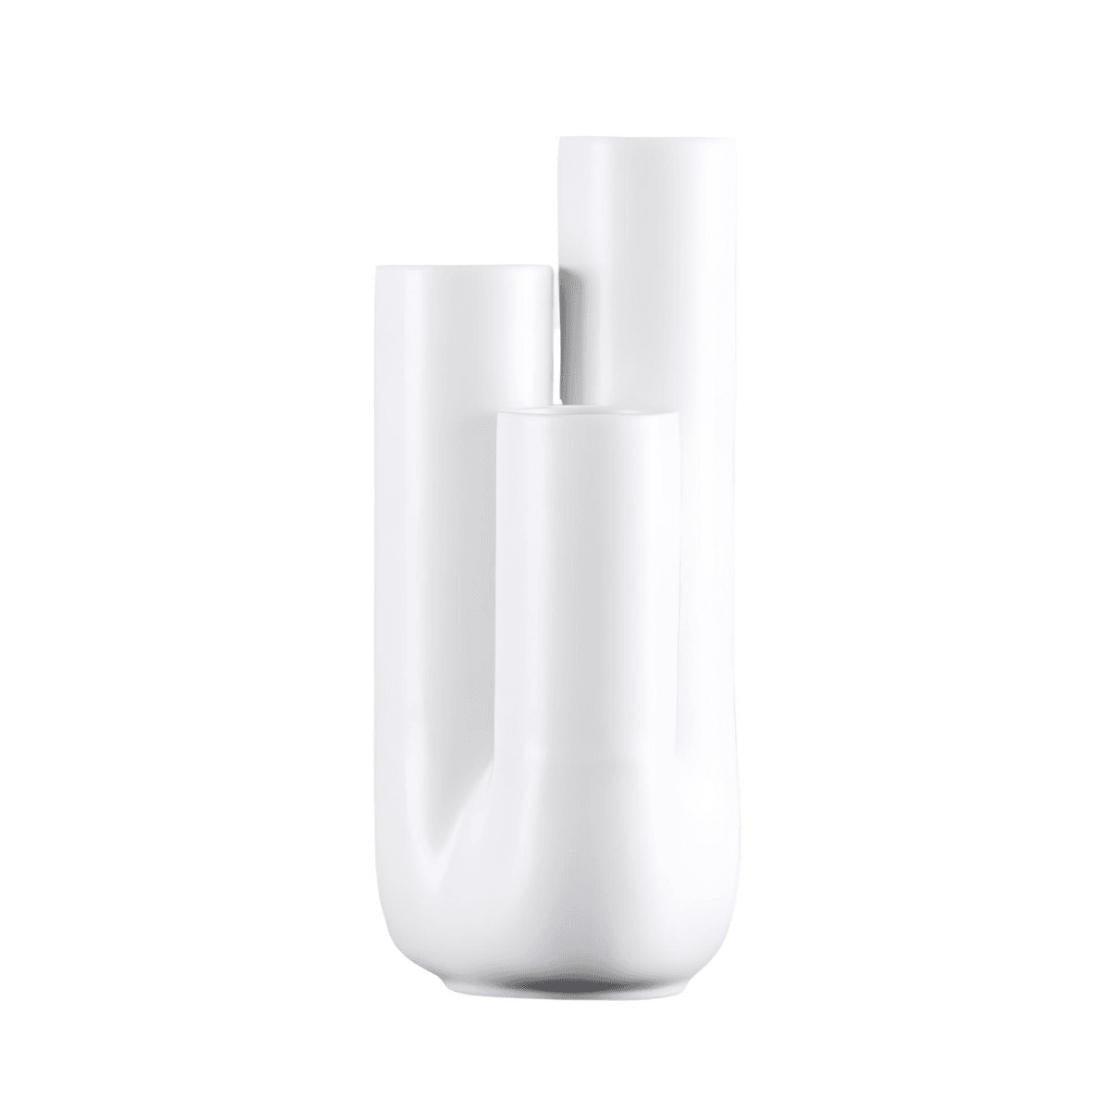 White, ceramic pipe vase